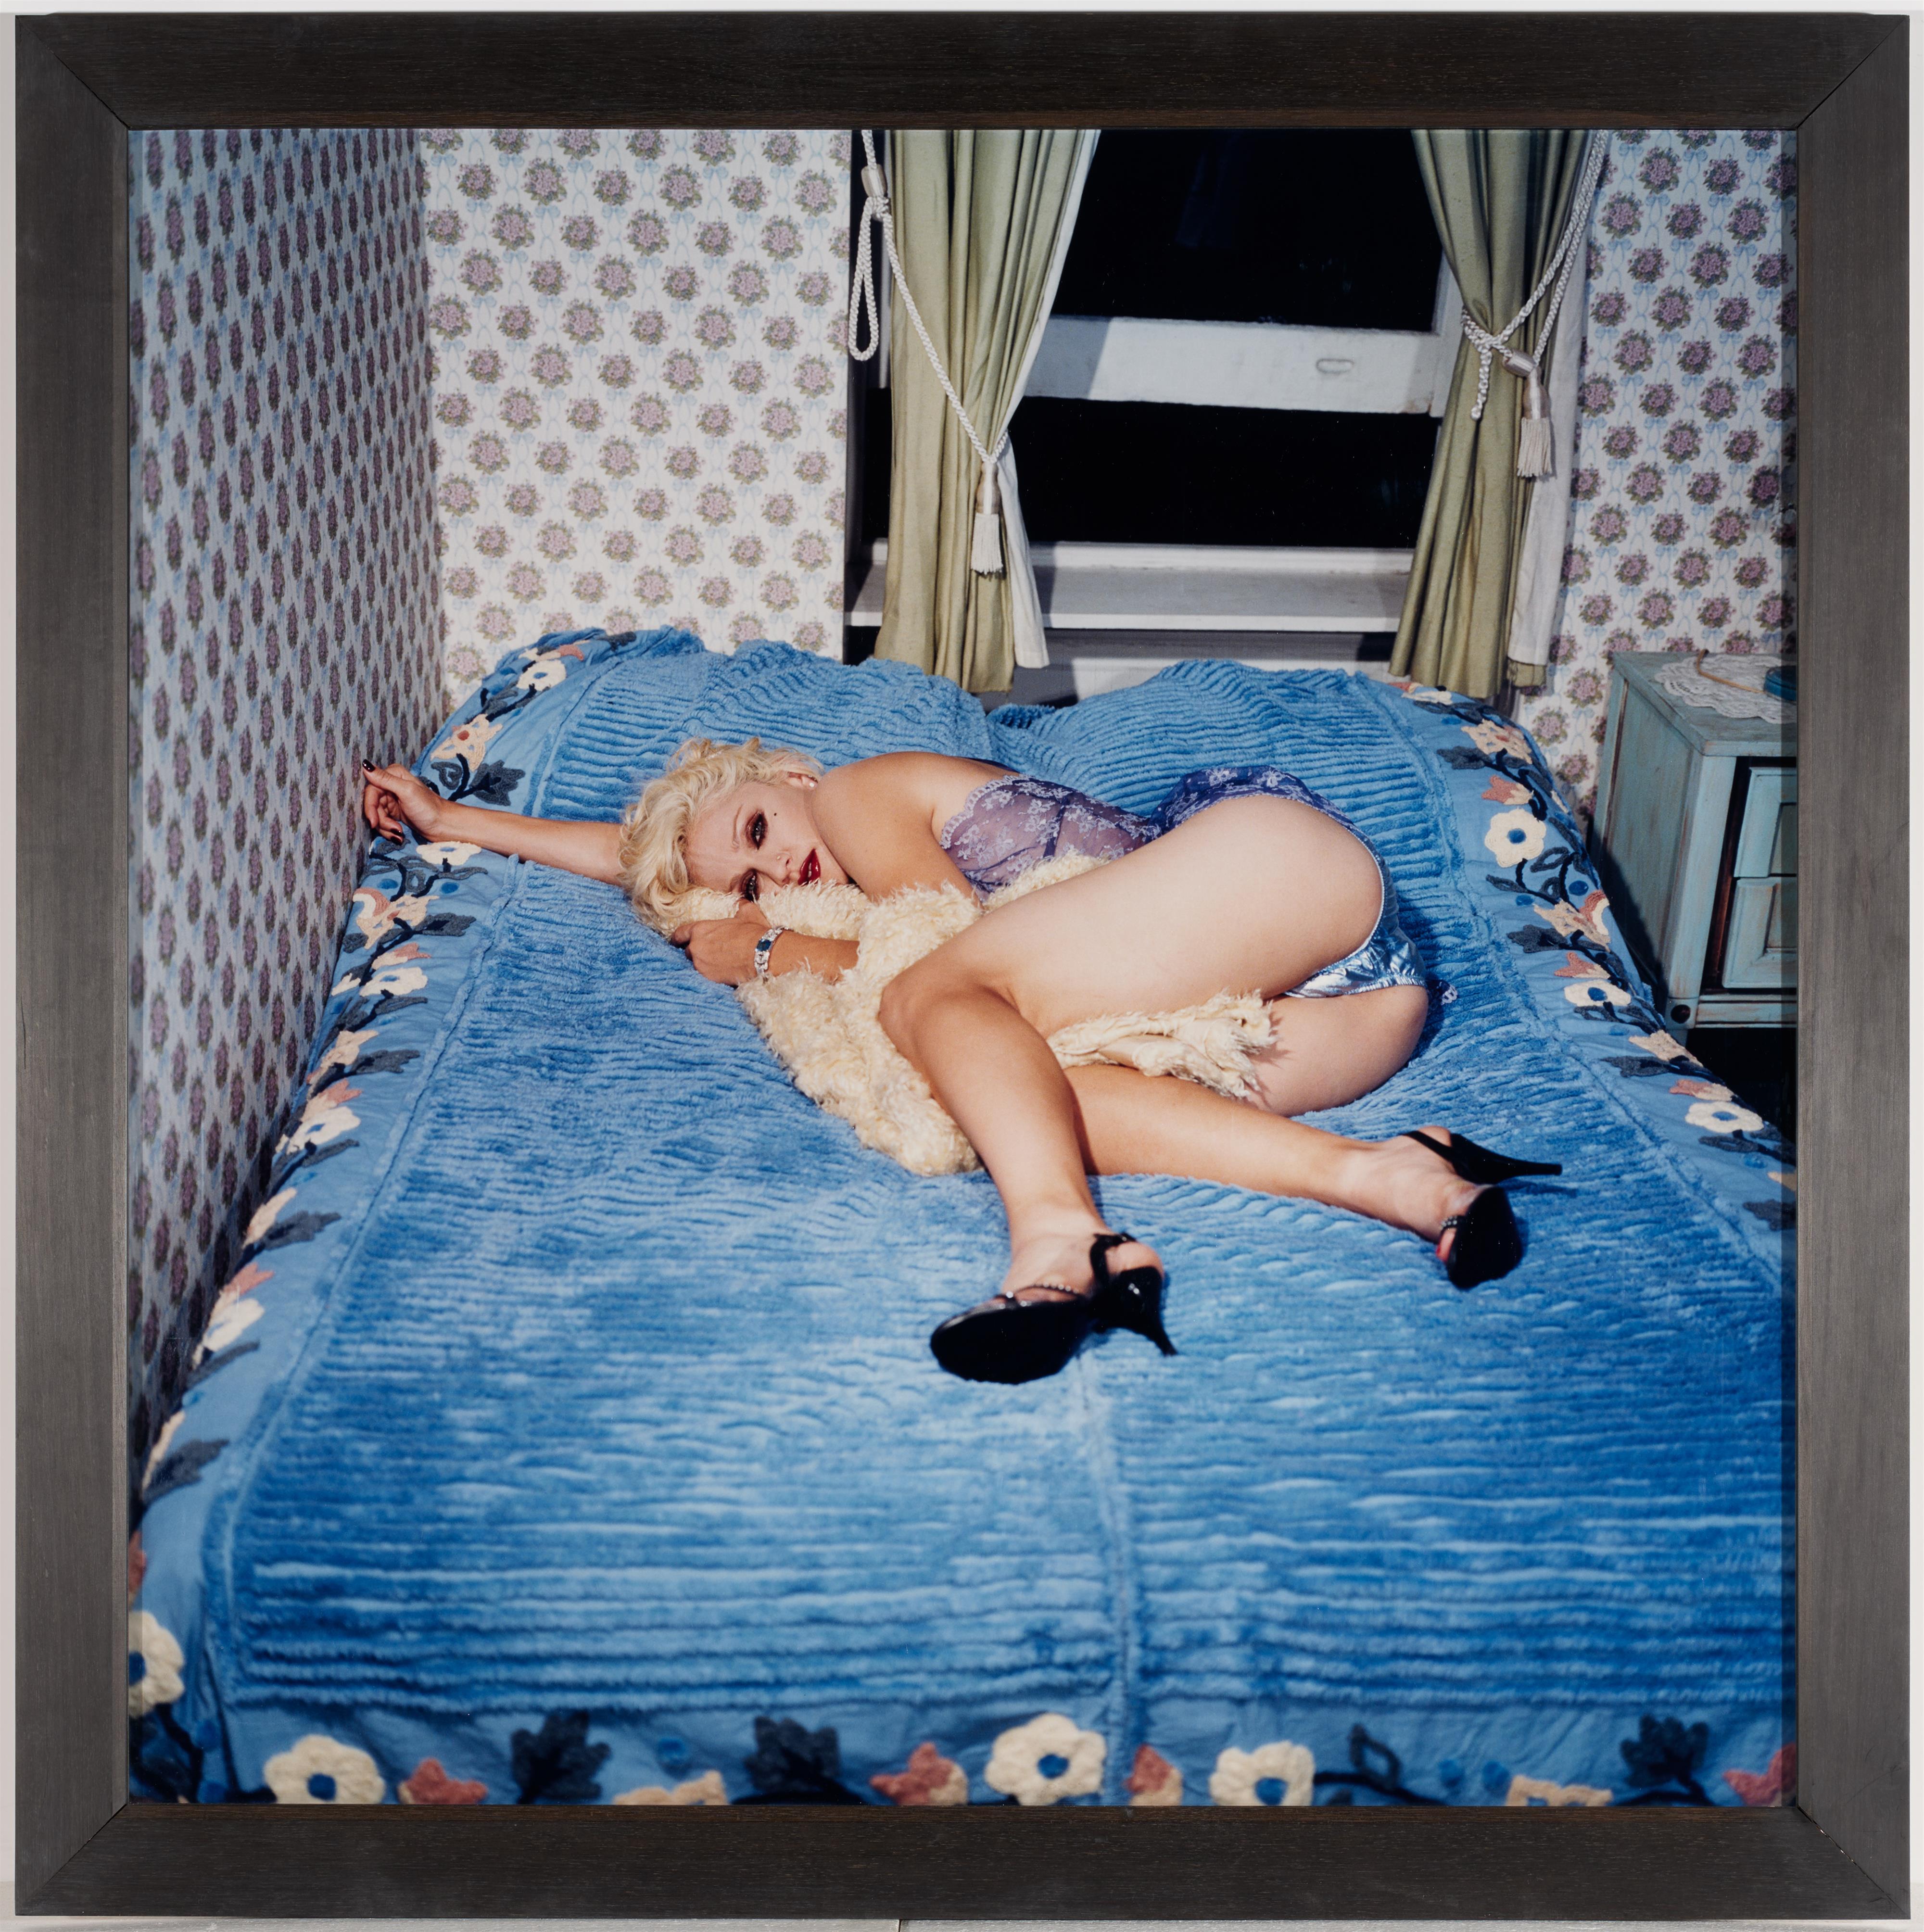 Bettina Rheims - Madonna Blue in Shiny Blue Underpants, New York (aus der Serie: Pourquoi m'as-tu abandonnée?) - image-2